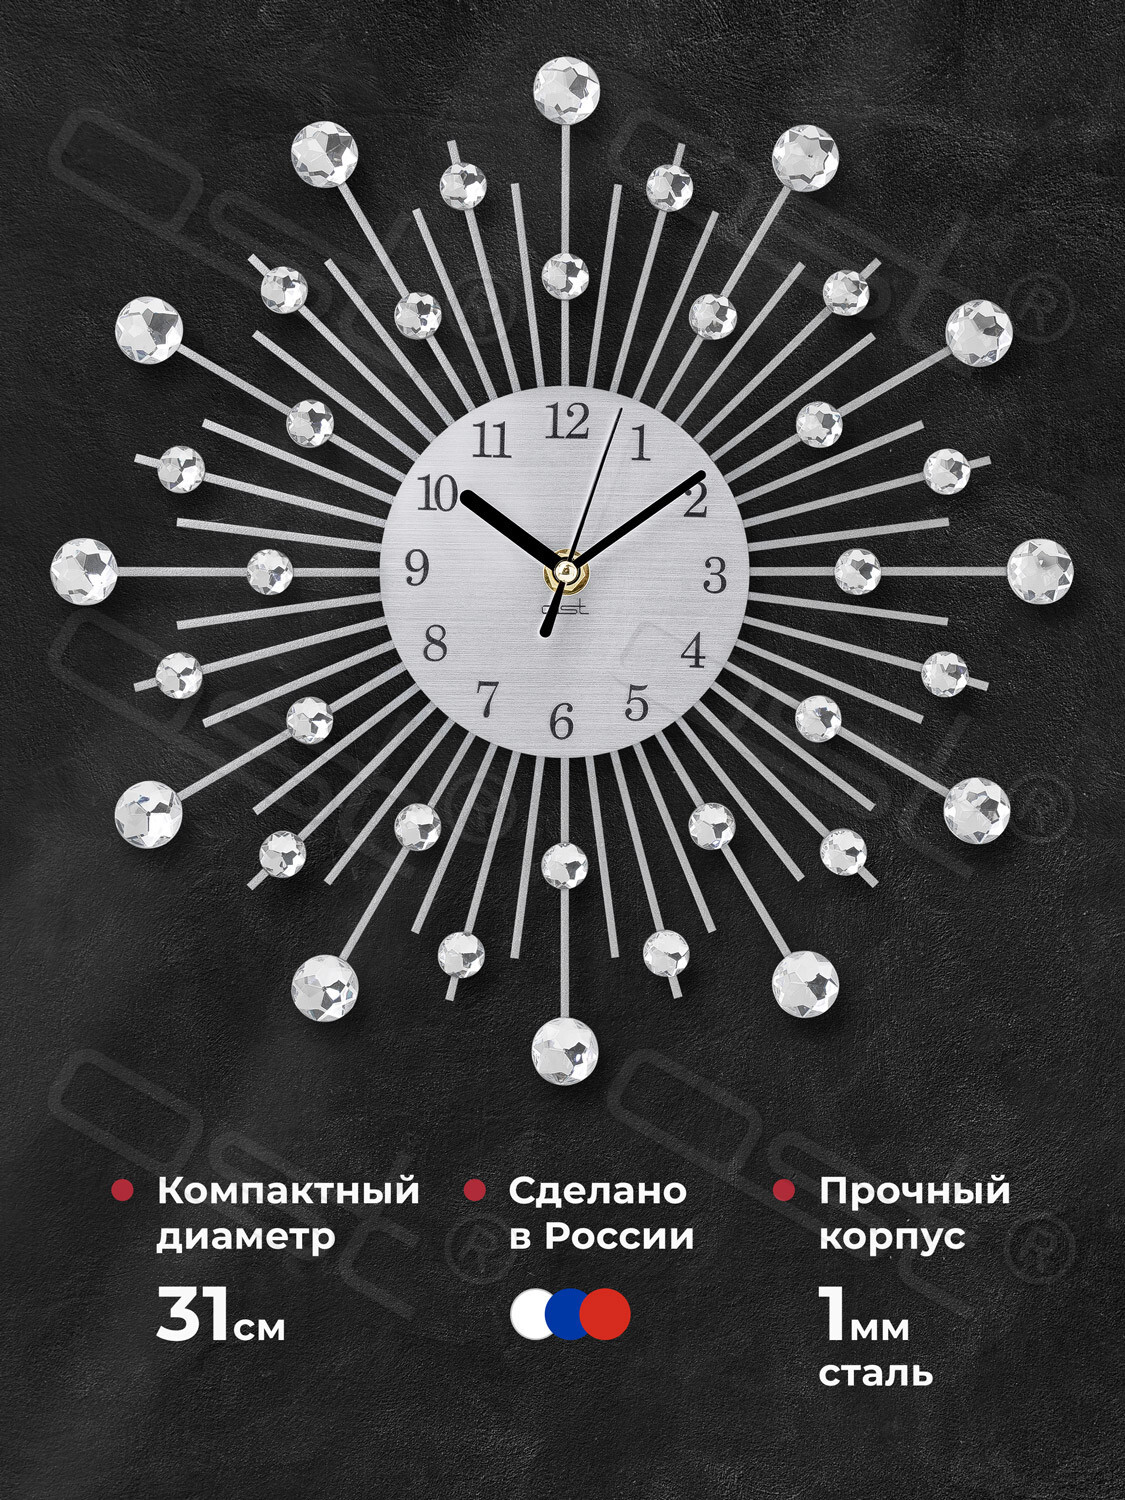 Инструкция по установке напольных часов